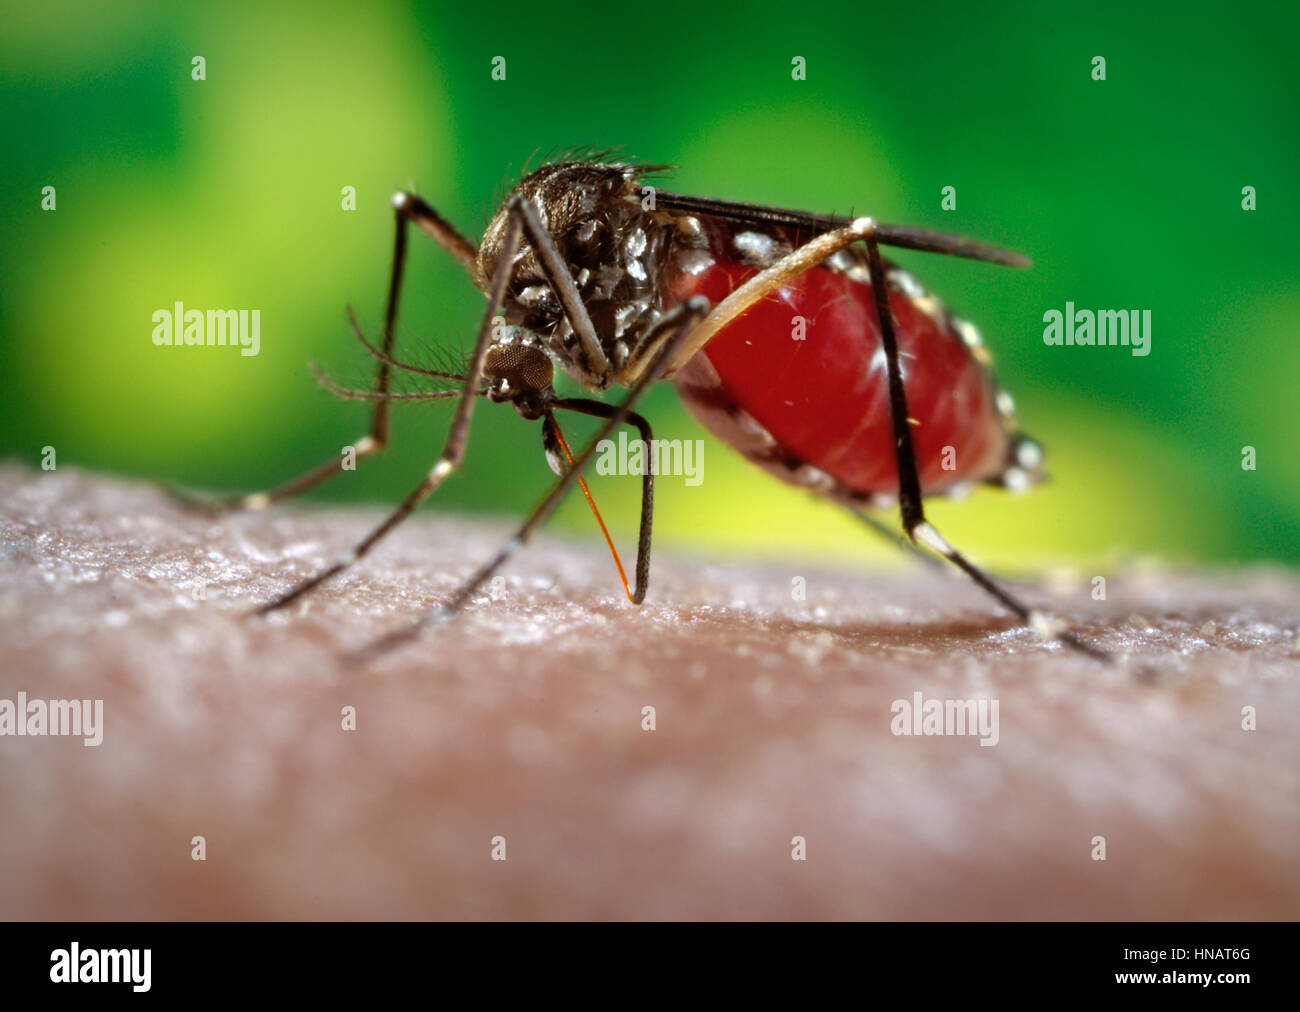 Un mosquito Aedes aegypti hembra fascículo su inserción a través de la superficie de la piel de su huésped. El mosquito Aedes aegypti es el principal vector responsable de la transmisión de Flavivirus Dengue (FD) y la fiebre hemorrágica del dengue (FHD), el día en que la picadura de mosquito Aedes aegypti prefiere alimentarse en sus hospederos humanos. Aedes aegypti también juega un papel importante como vector de la 'Fiebre Amarilla'. Con frecuencia se encuentra en sus alrededores tropicales, las bandas blancas marcas en los segmentos tarsales de sus piernas articulados, aunque distinguiéndolo como Aedes aegypti, son similares a los de algunas otras especies de mosquito. Foto de stock